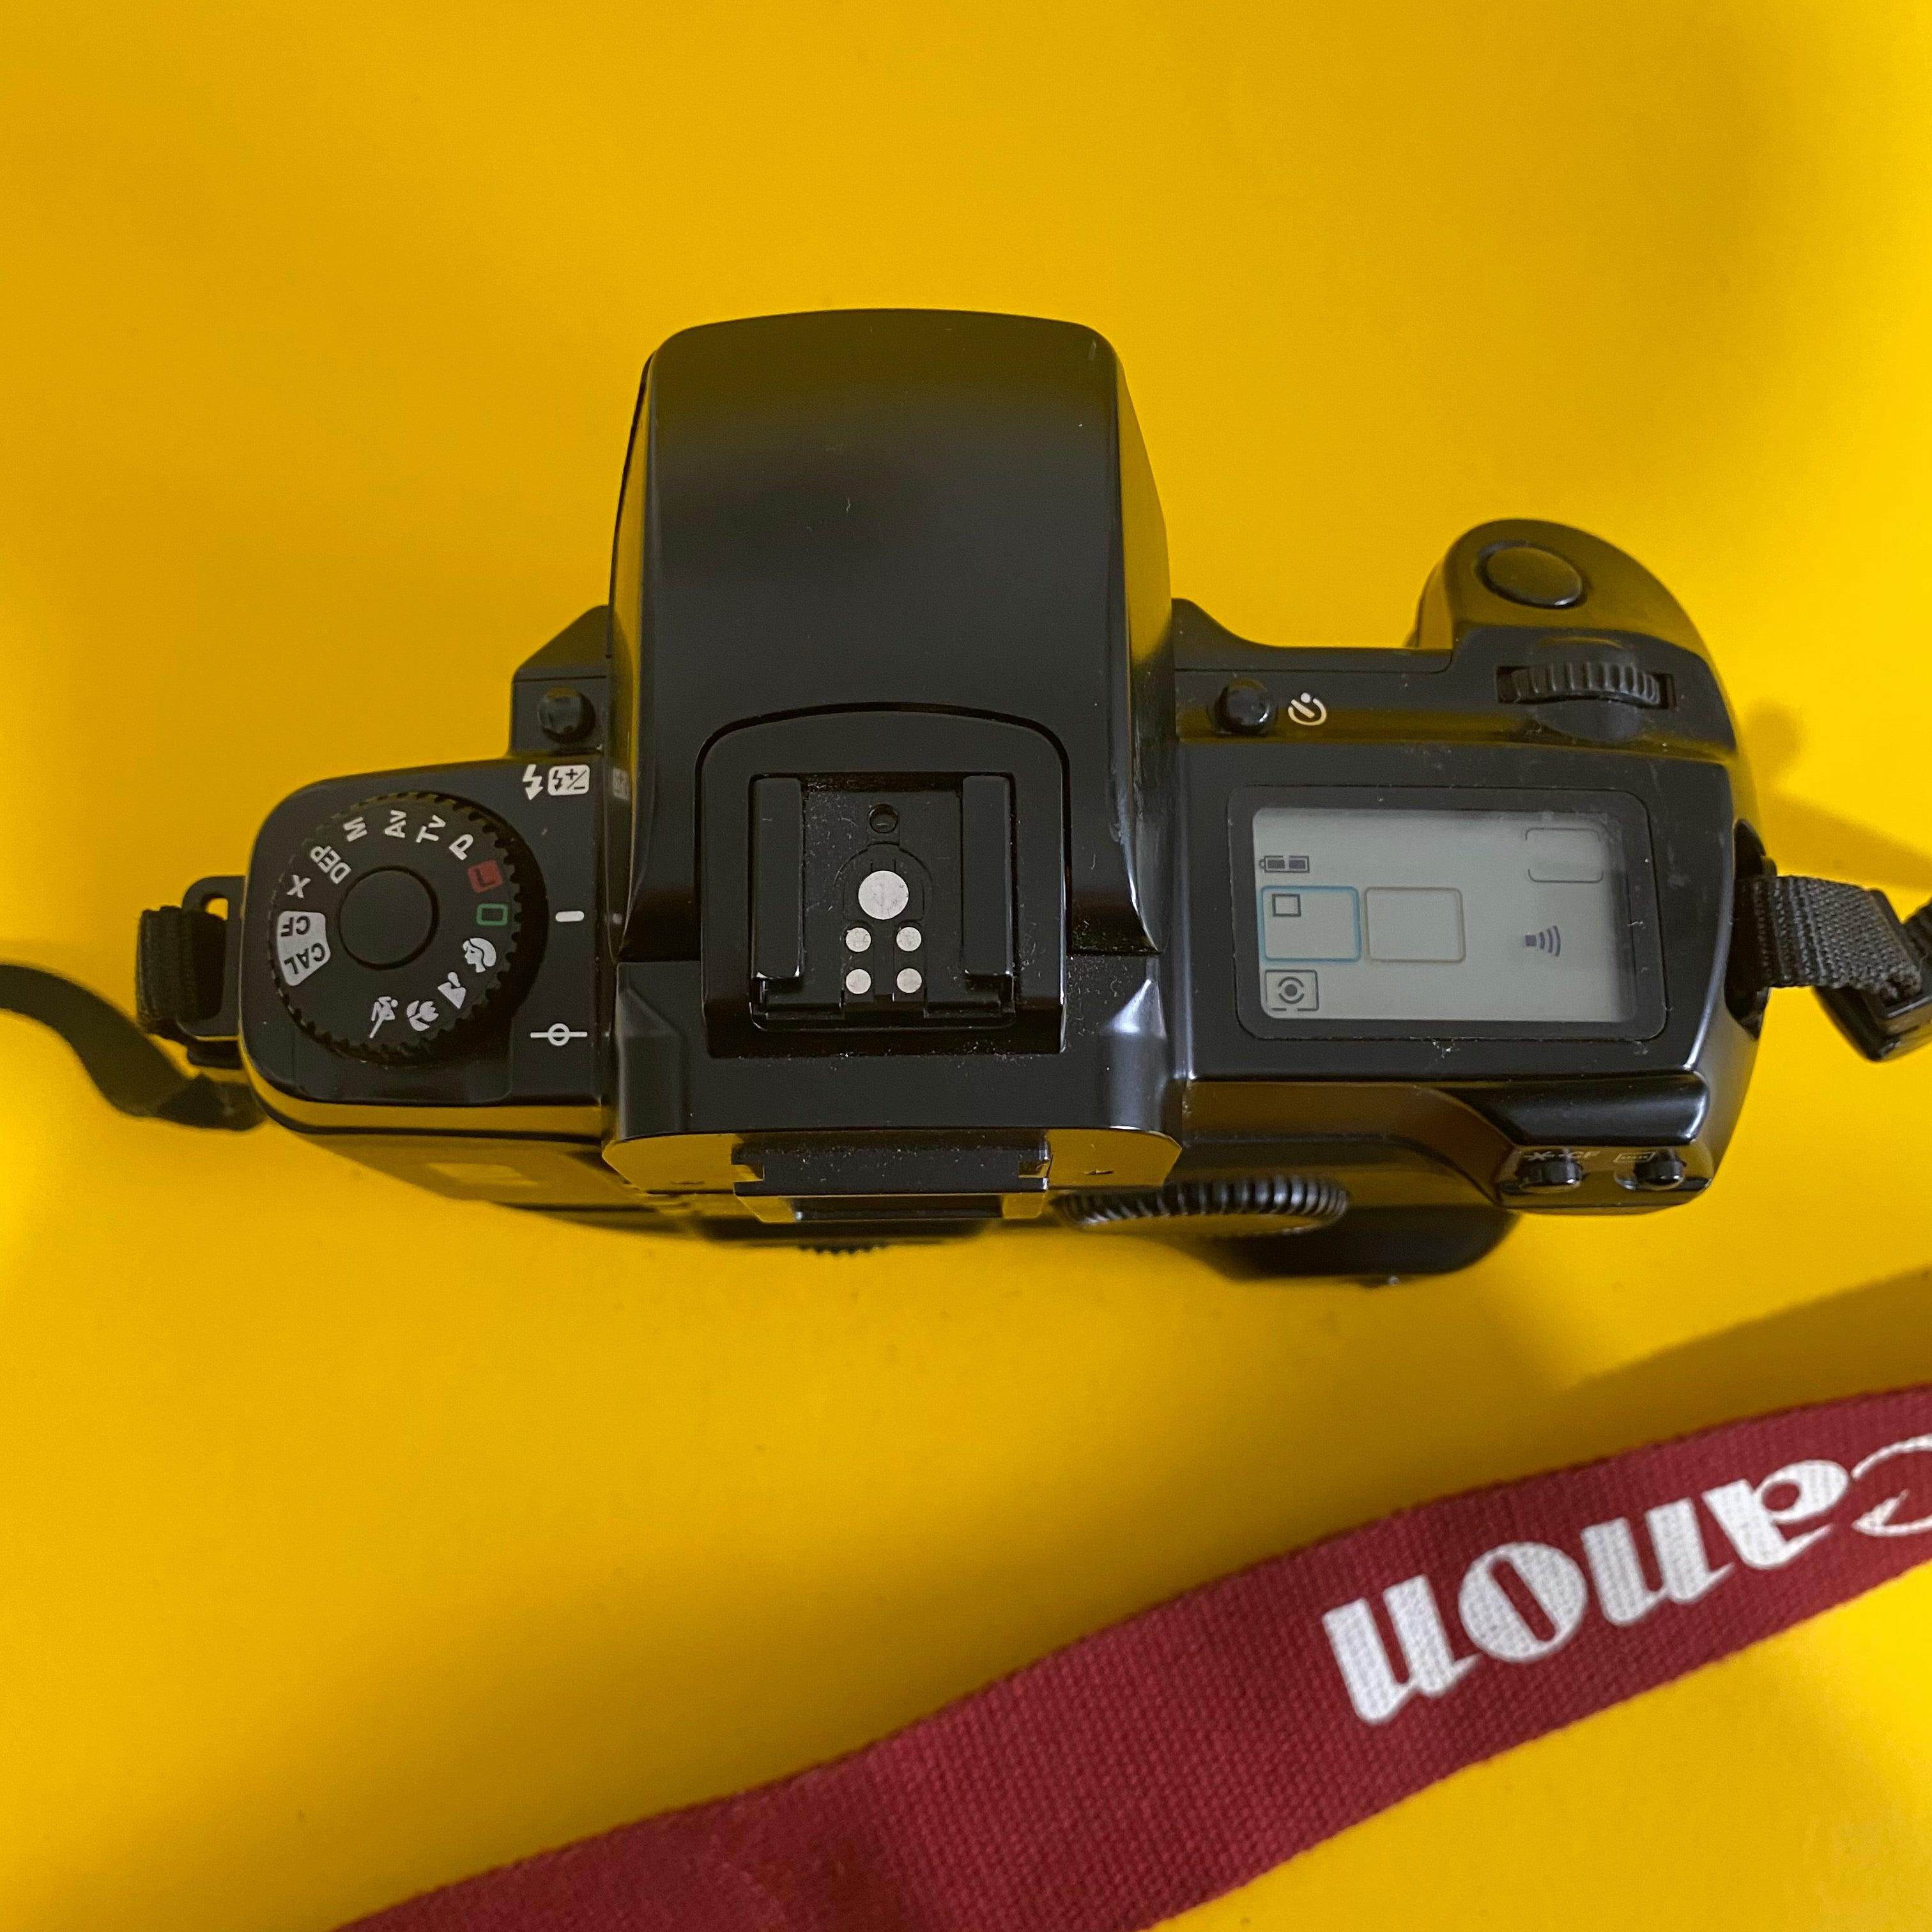 Canon EOS 5 35mm SLR フィルム カメラ - 本体のみ